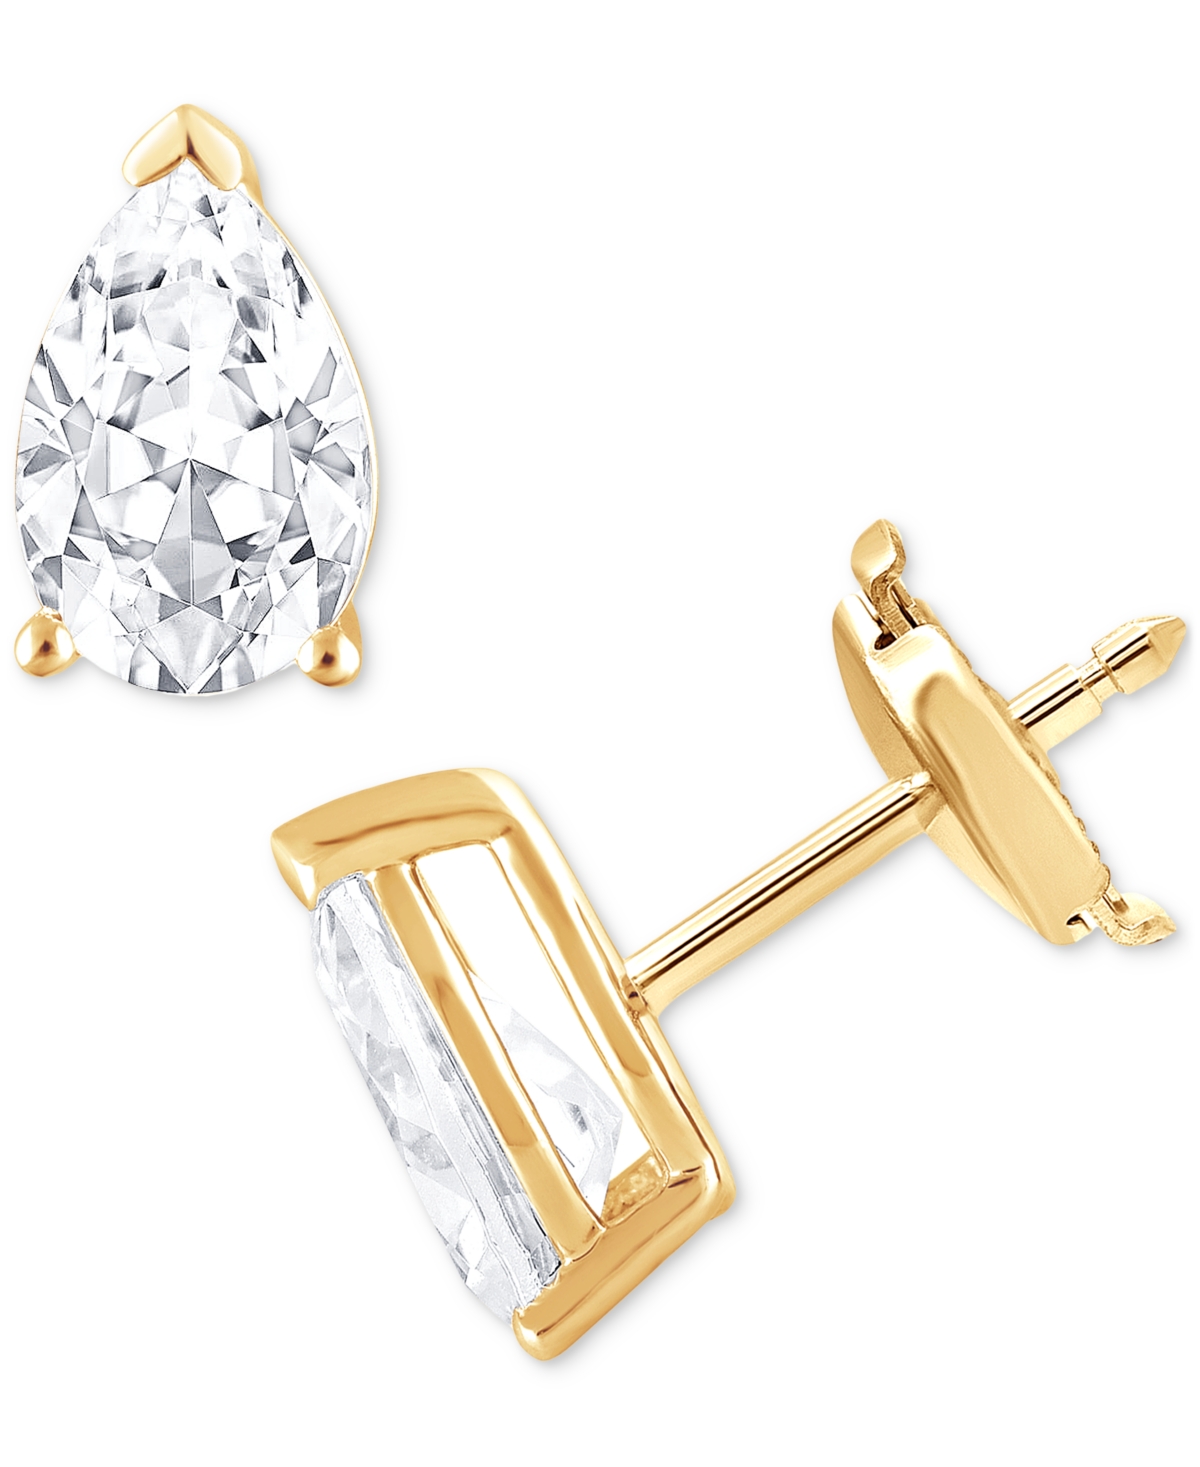 Certified Lab Grown Diamond Pear Stud Earrings (3 ct. t.w.) in 14k Gold - Yellow Gold